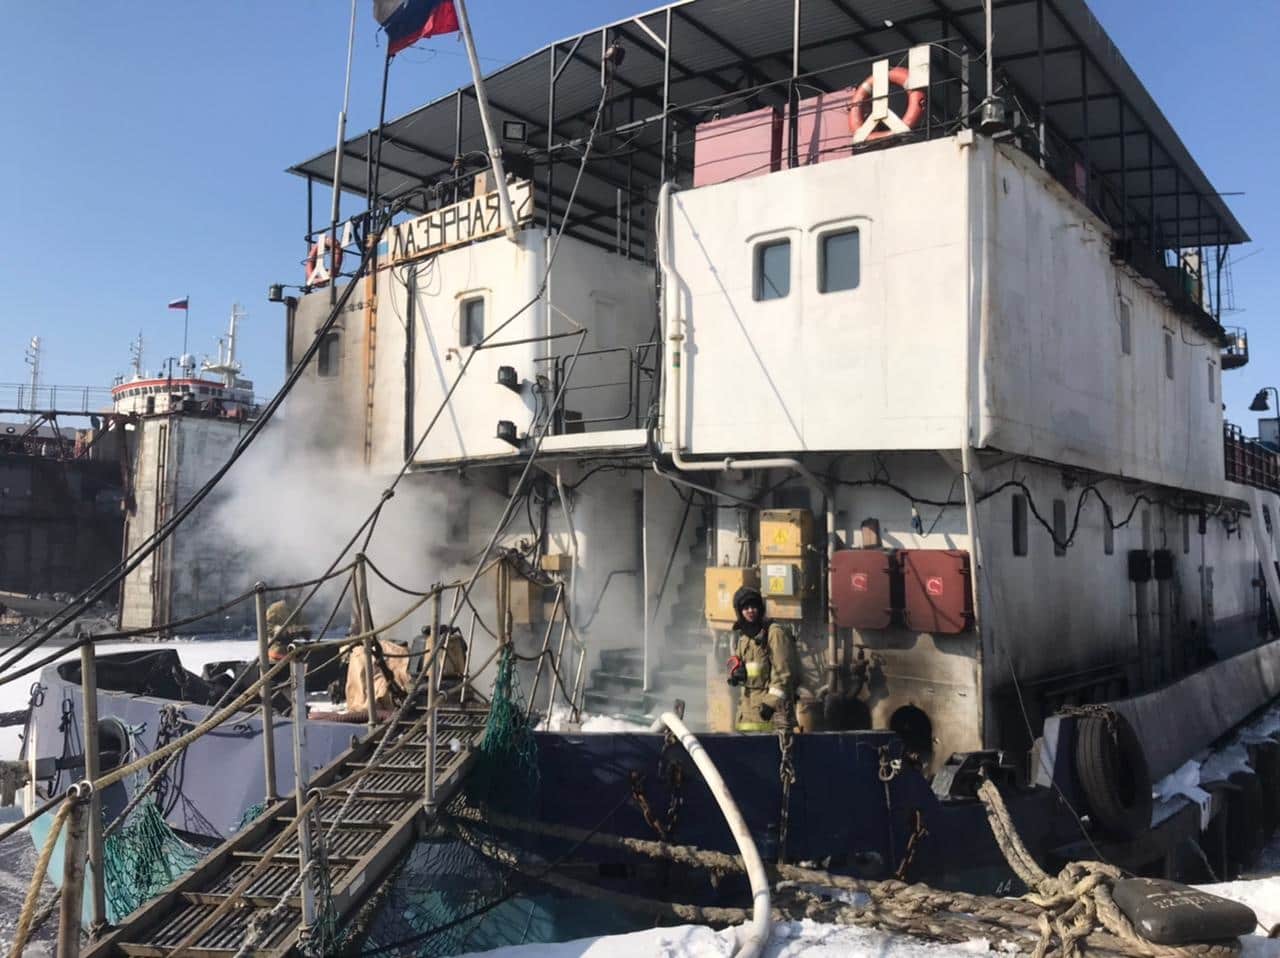 В Находке огнеборцы МЧС России ликвидировали пожар на частном судне «Лазурная-2»